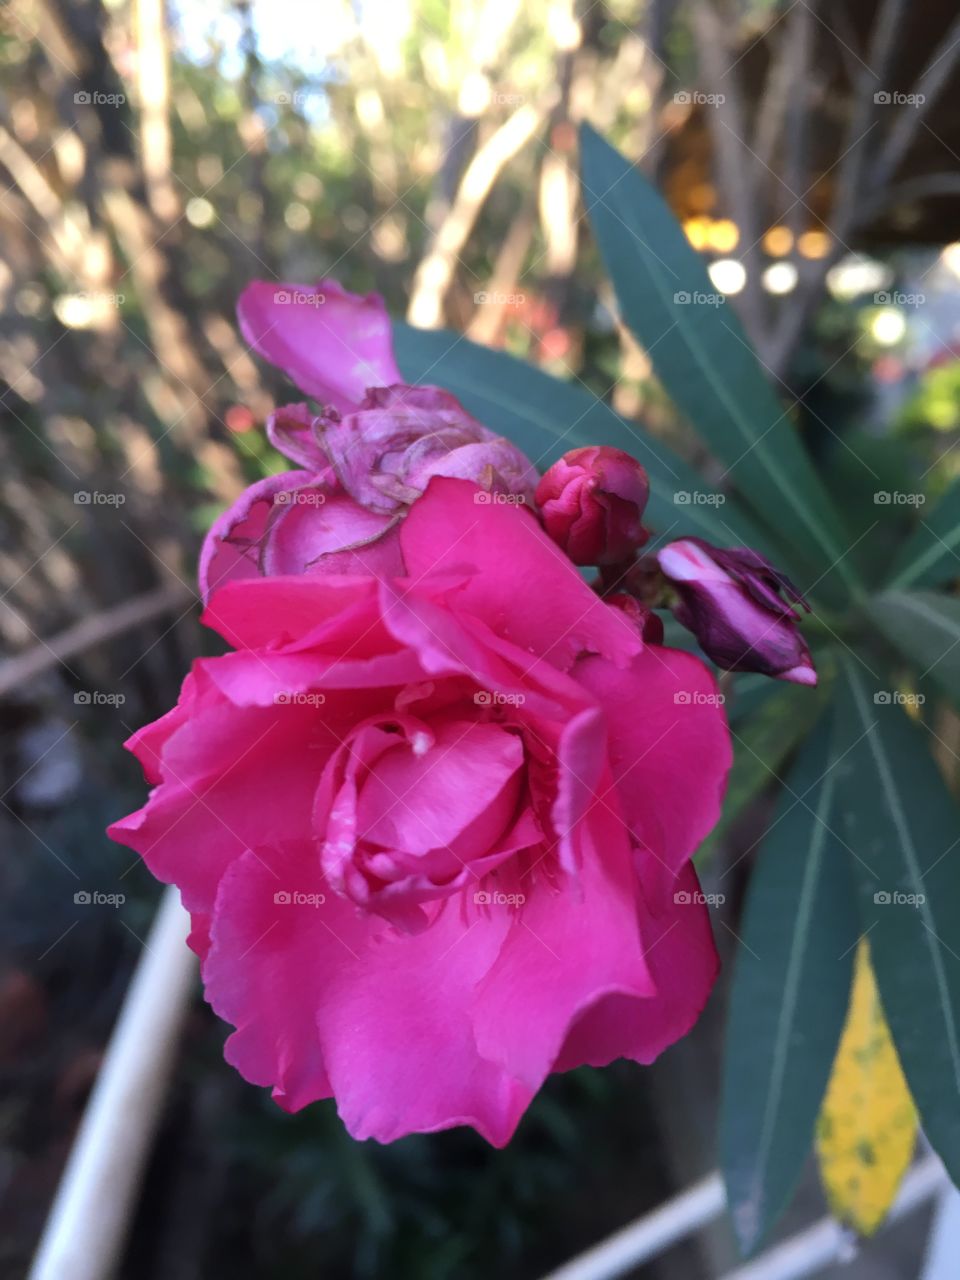 A beleza das pétalas rosas!
🌹 
#flowers
#flores
#flor
#Jardinagem é nosso #hobby!